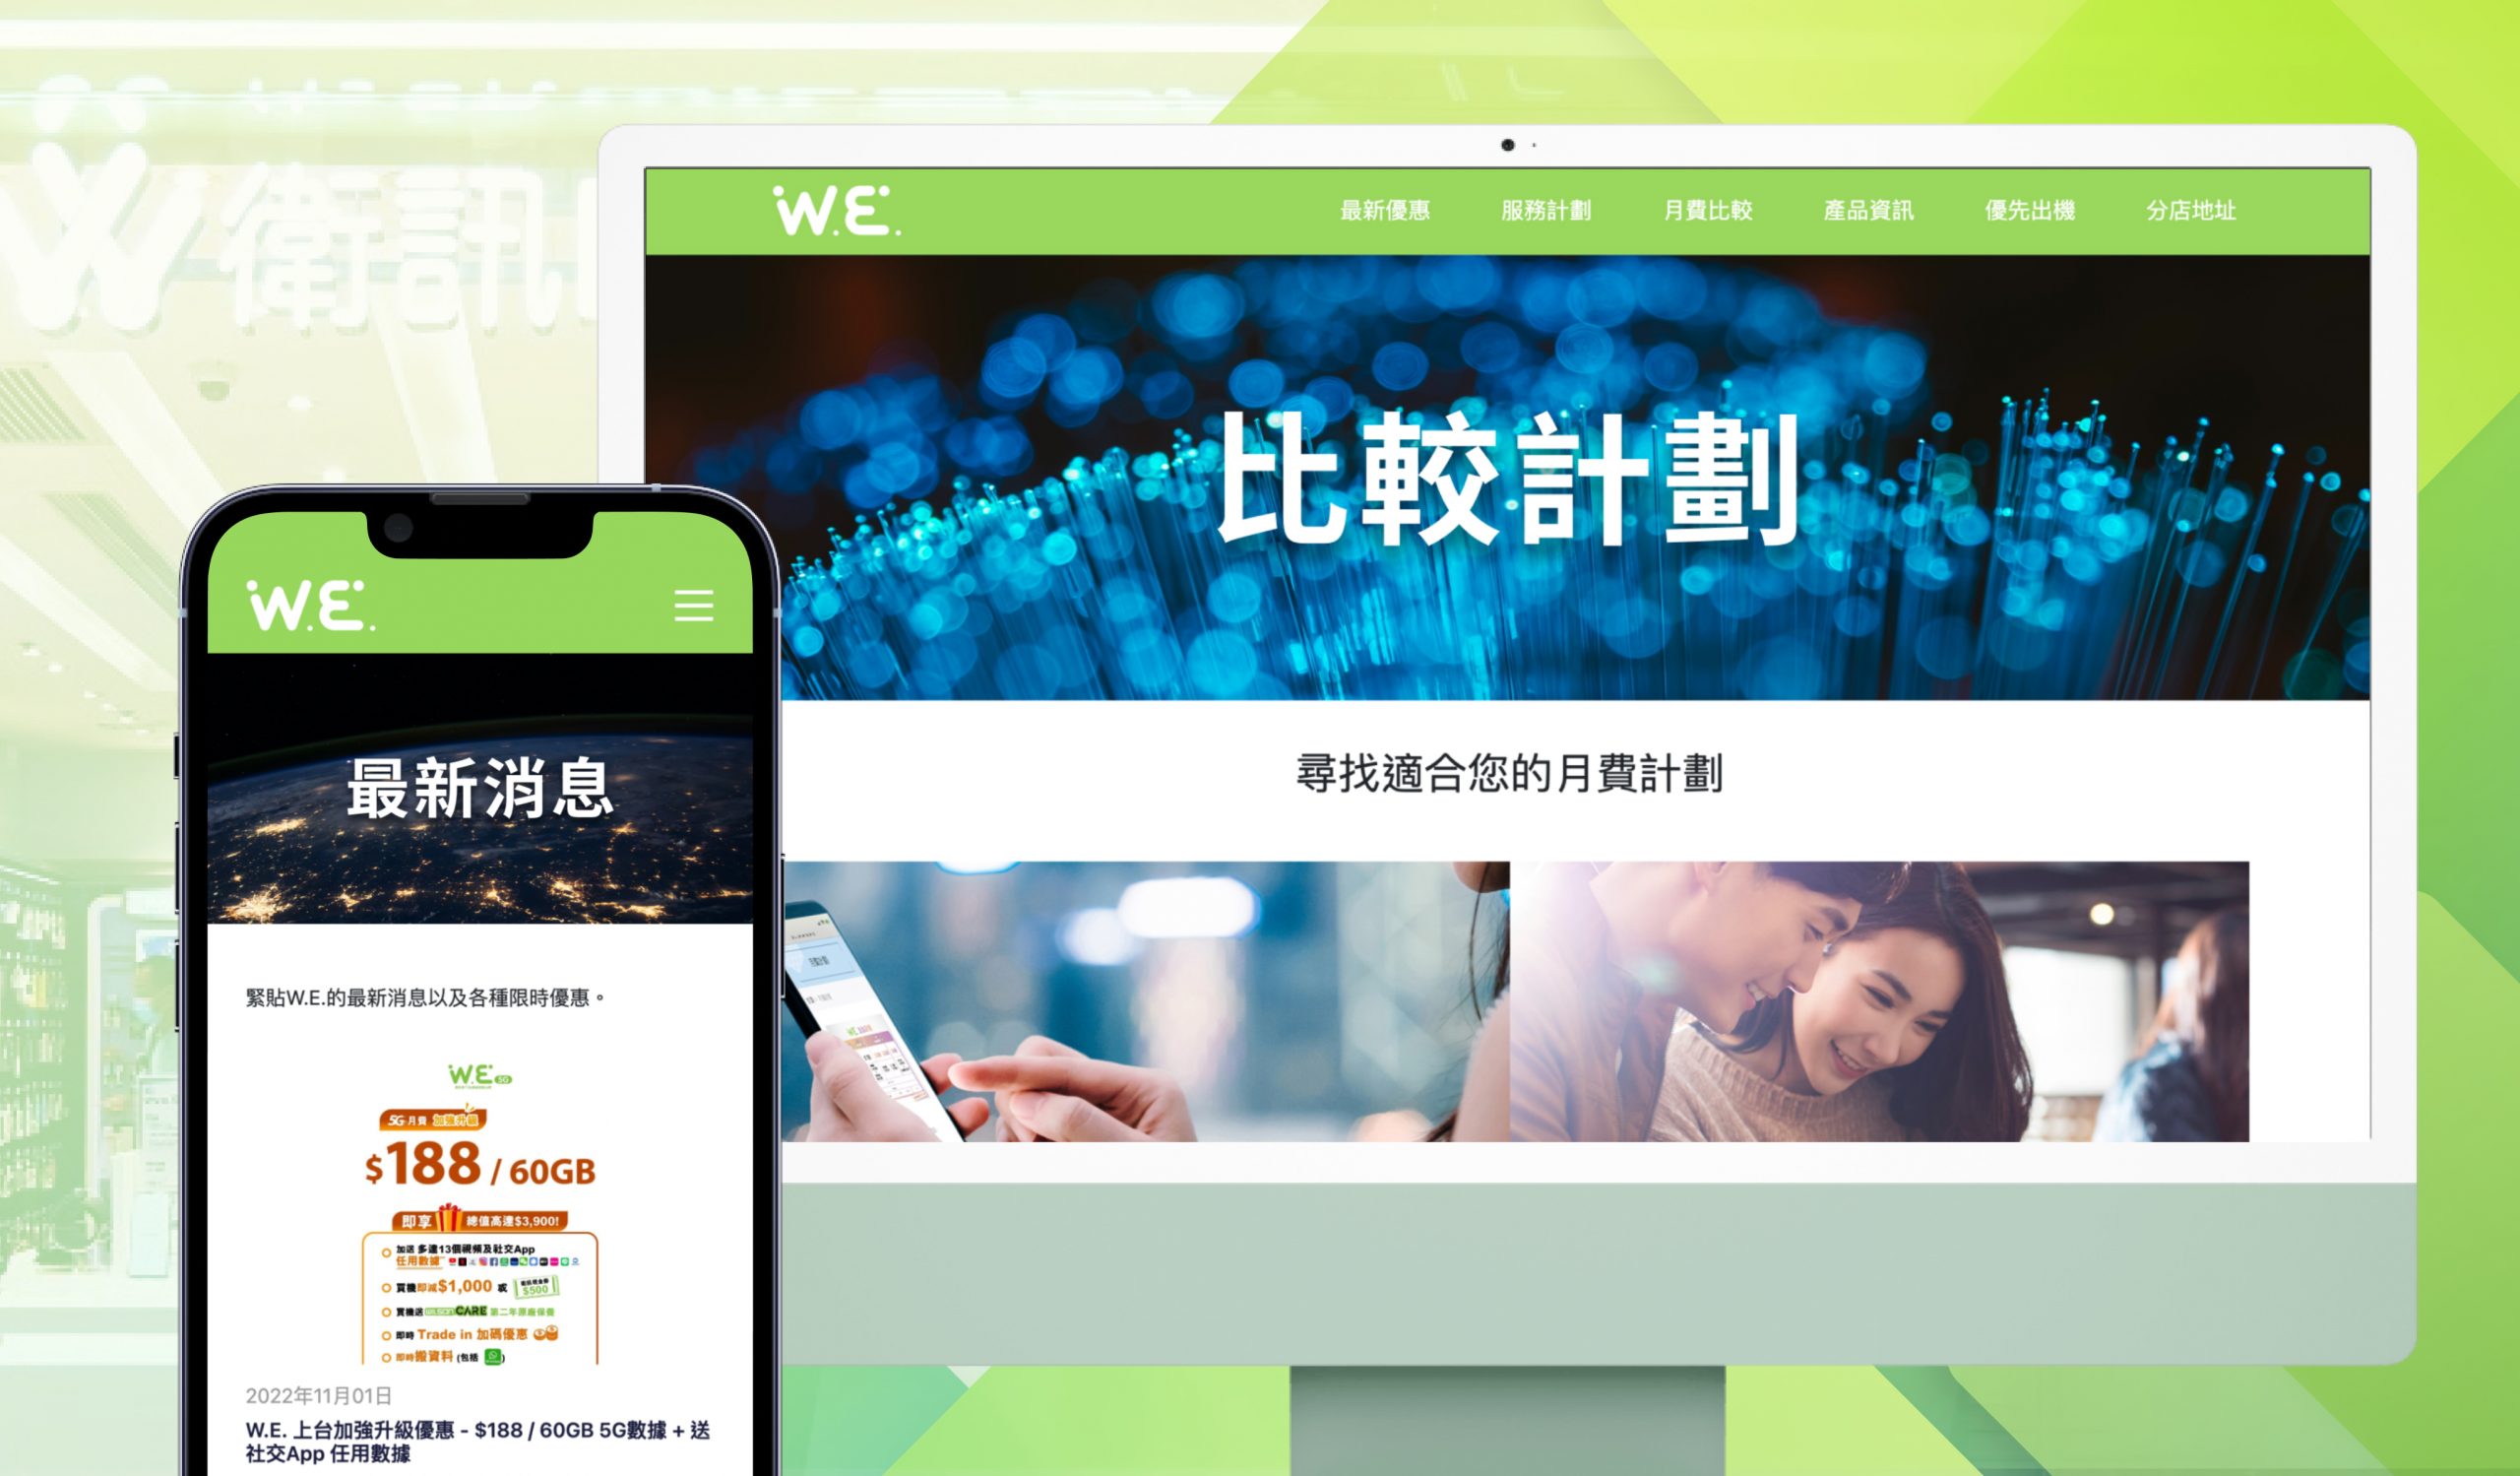 Legato - Mobile App company Hong Kong